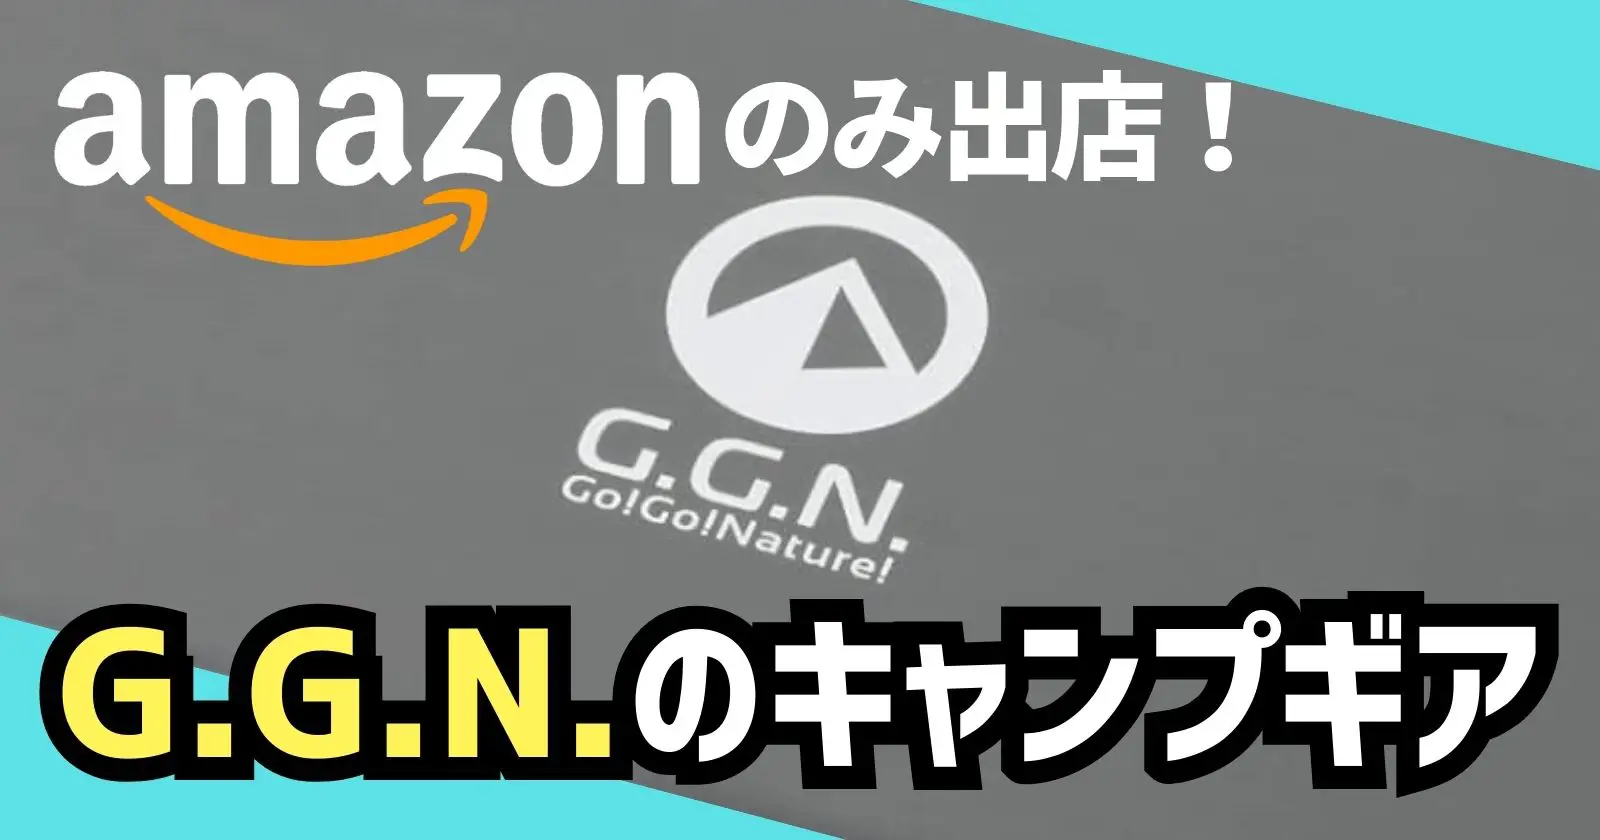 Amazon限定アウトドアブランド「G.G.N.」のアイテムがタイムセールで登場 | TAKIBI（タキビ） |  キャンプ・グランピングなどアウトドアの総合情報サイト